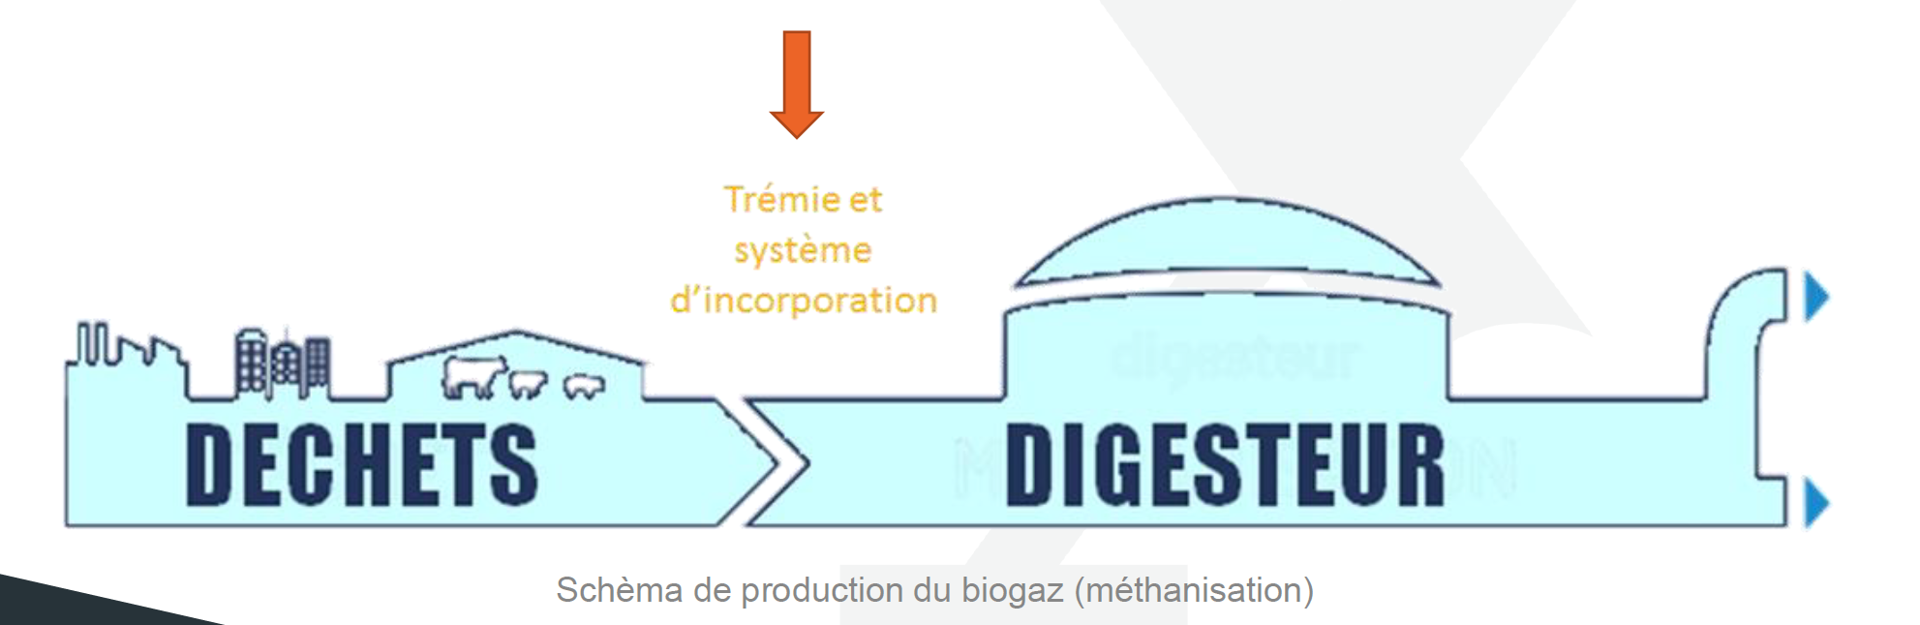 biogaz schéma